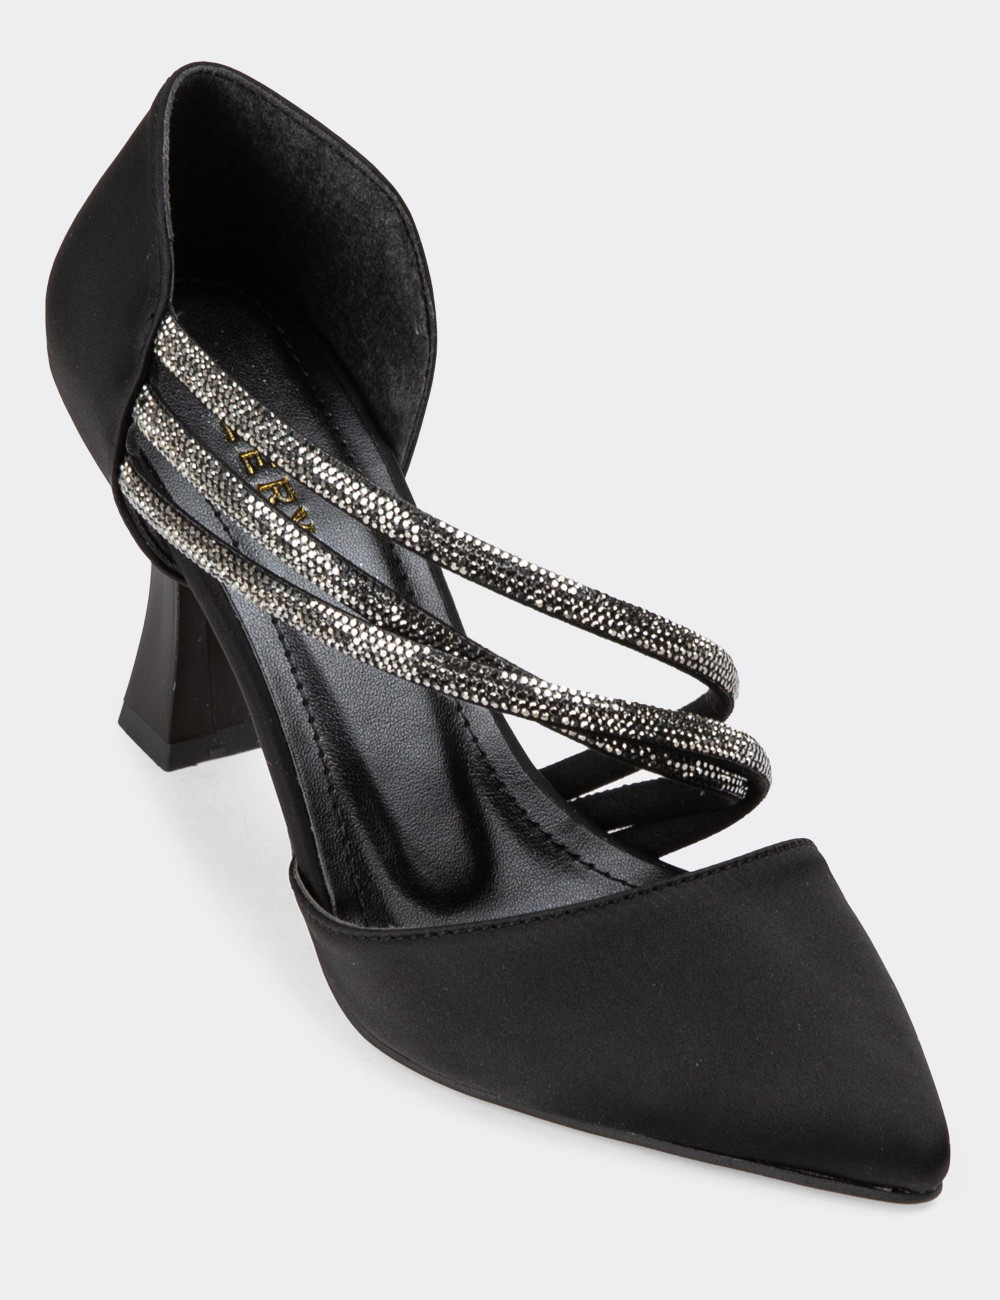 Siyah Taşlı Topuklu Kadın Abiye Ayakkabı - K0553ZSYHM01